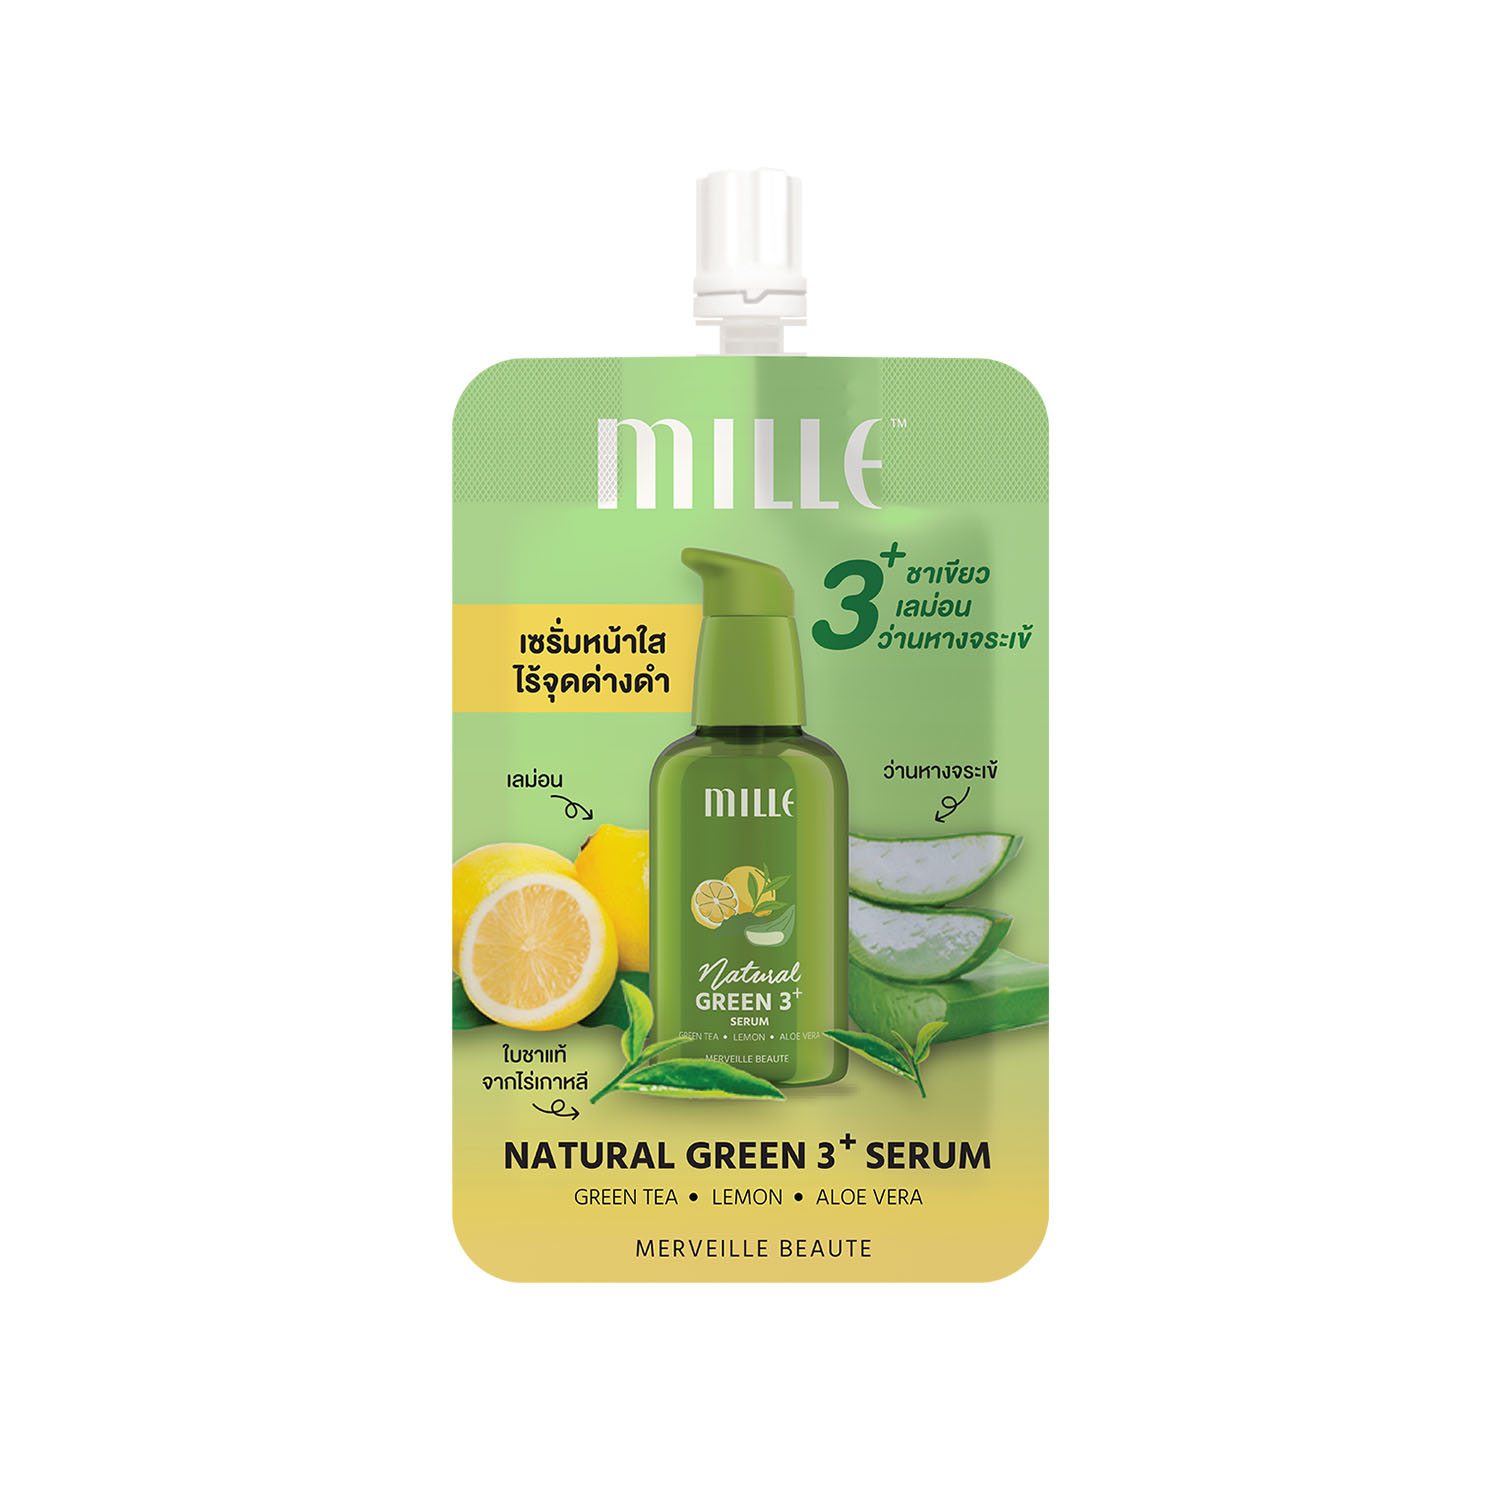 Mille Natural Green3+ Serum 6g. (เซรั่มชาเขียว)